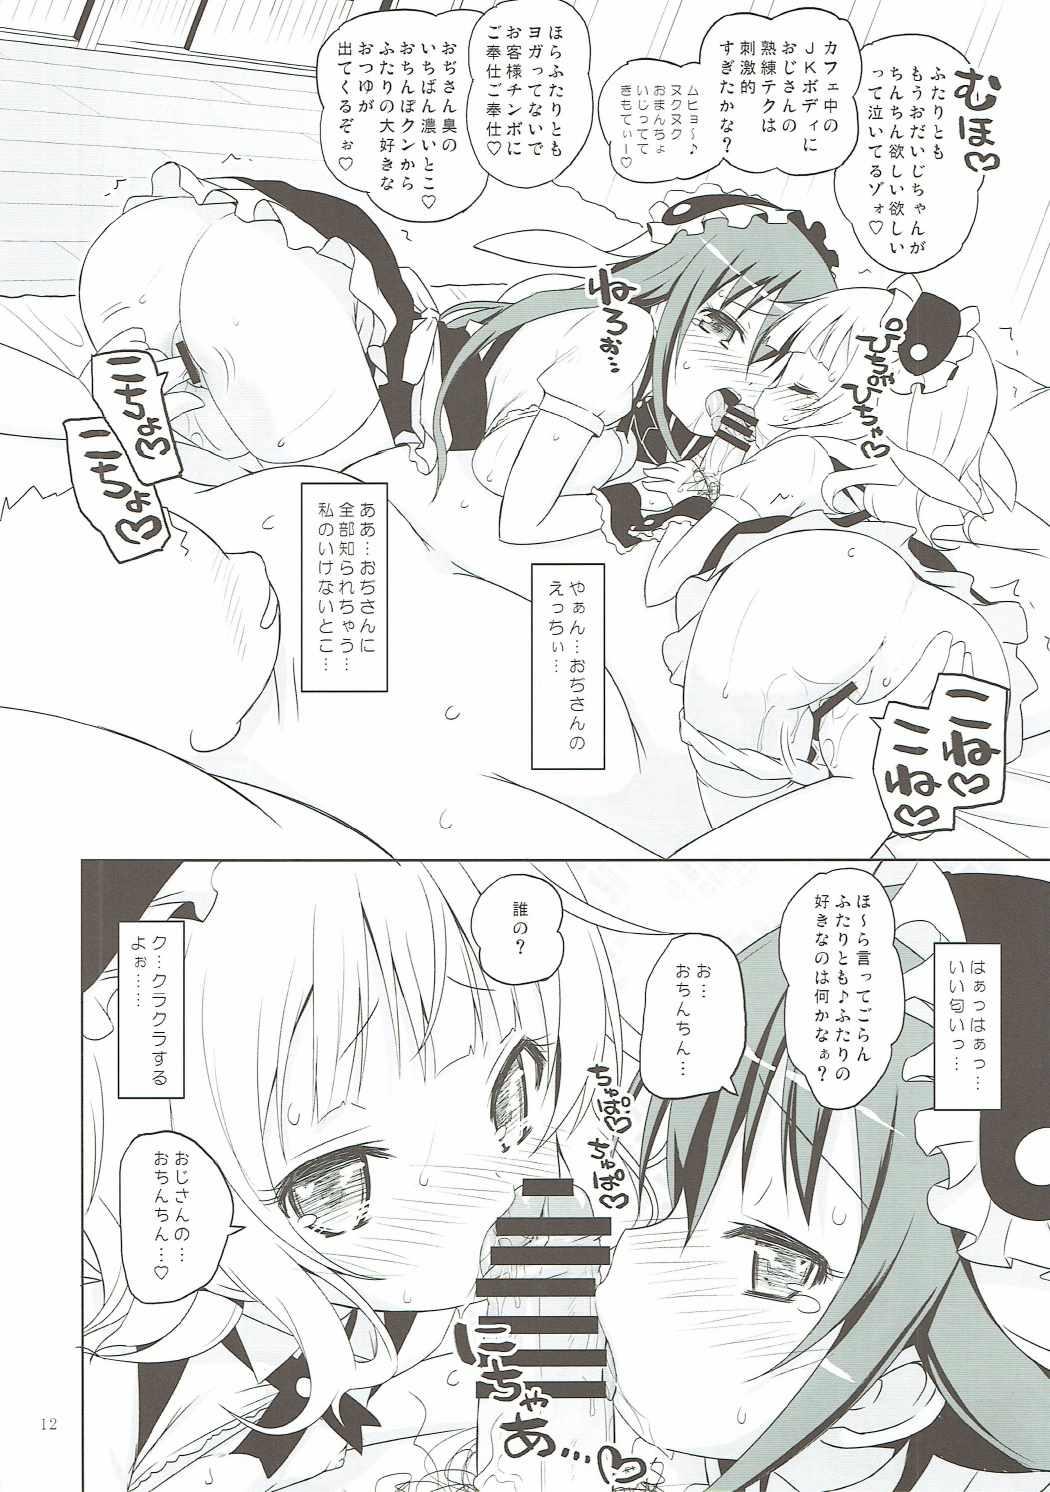 Cojiendo Sharo-chan VS Caffeine Otoko - Gochuumon wa usagi desu ka Milfsex - Page 11